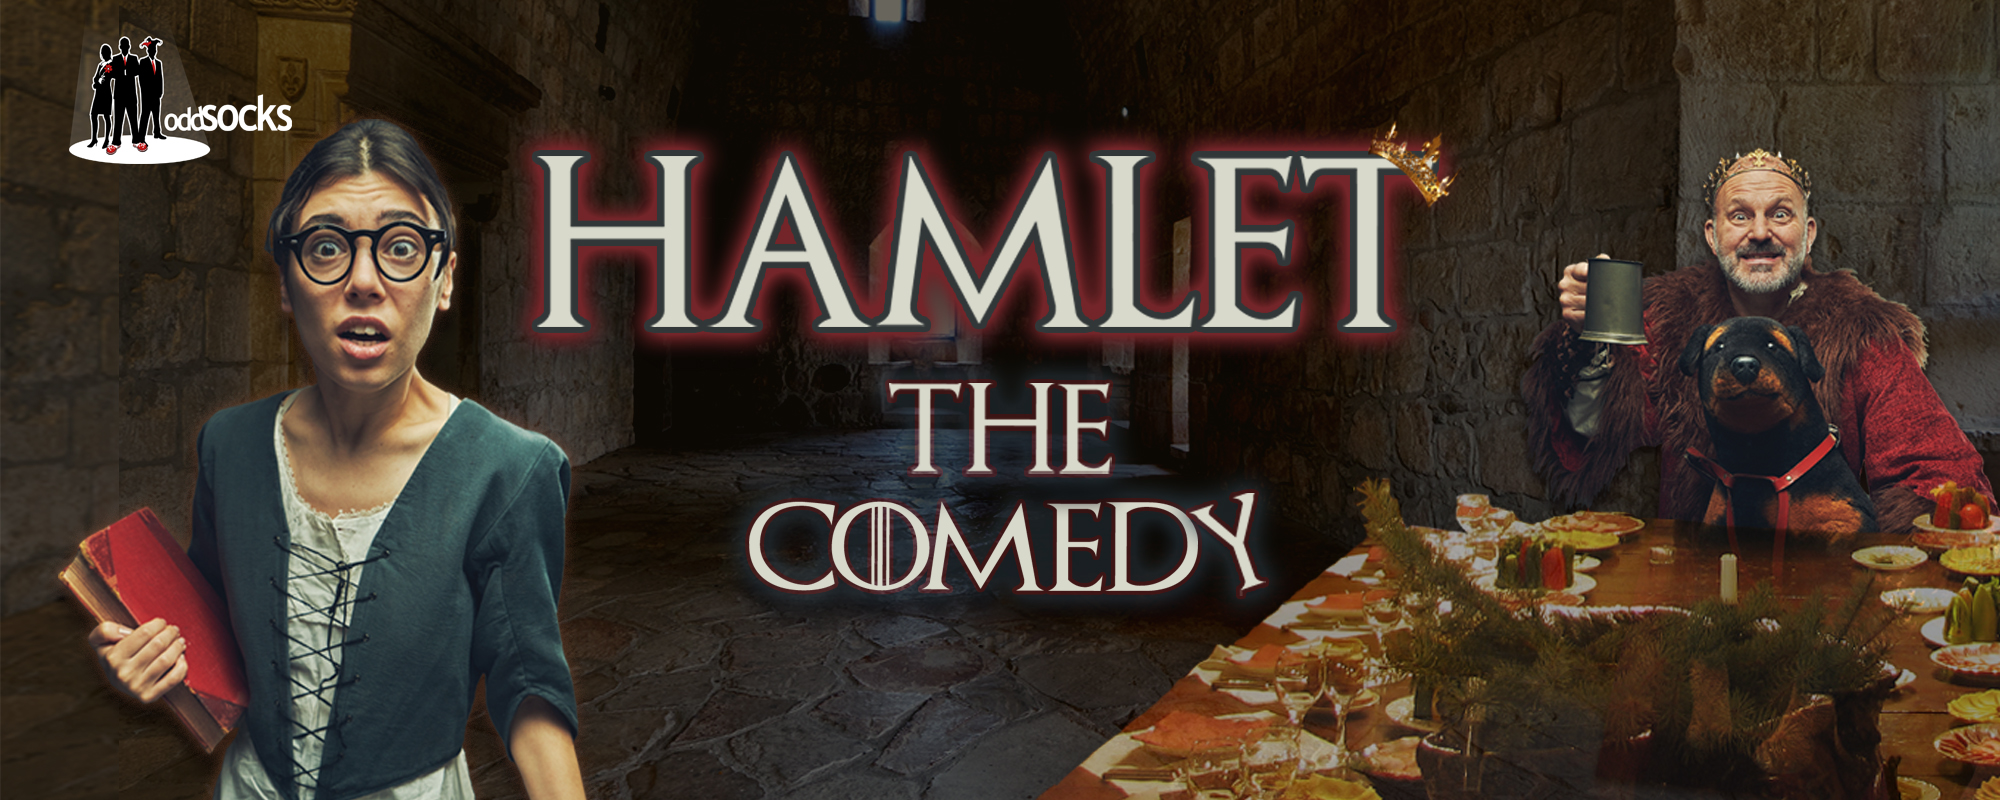 Oddsocks - Hamlet The Comedy